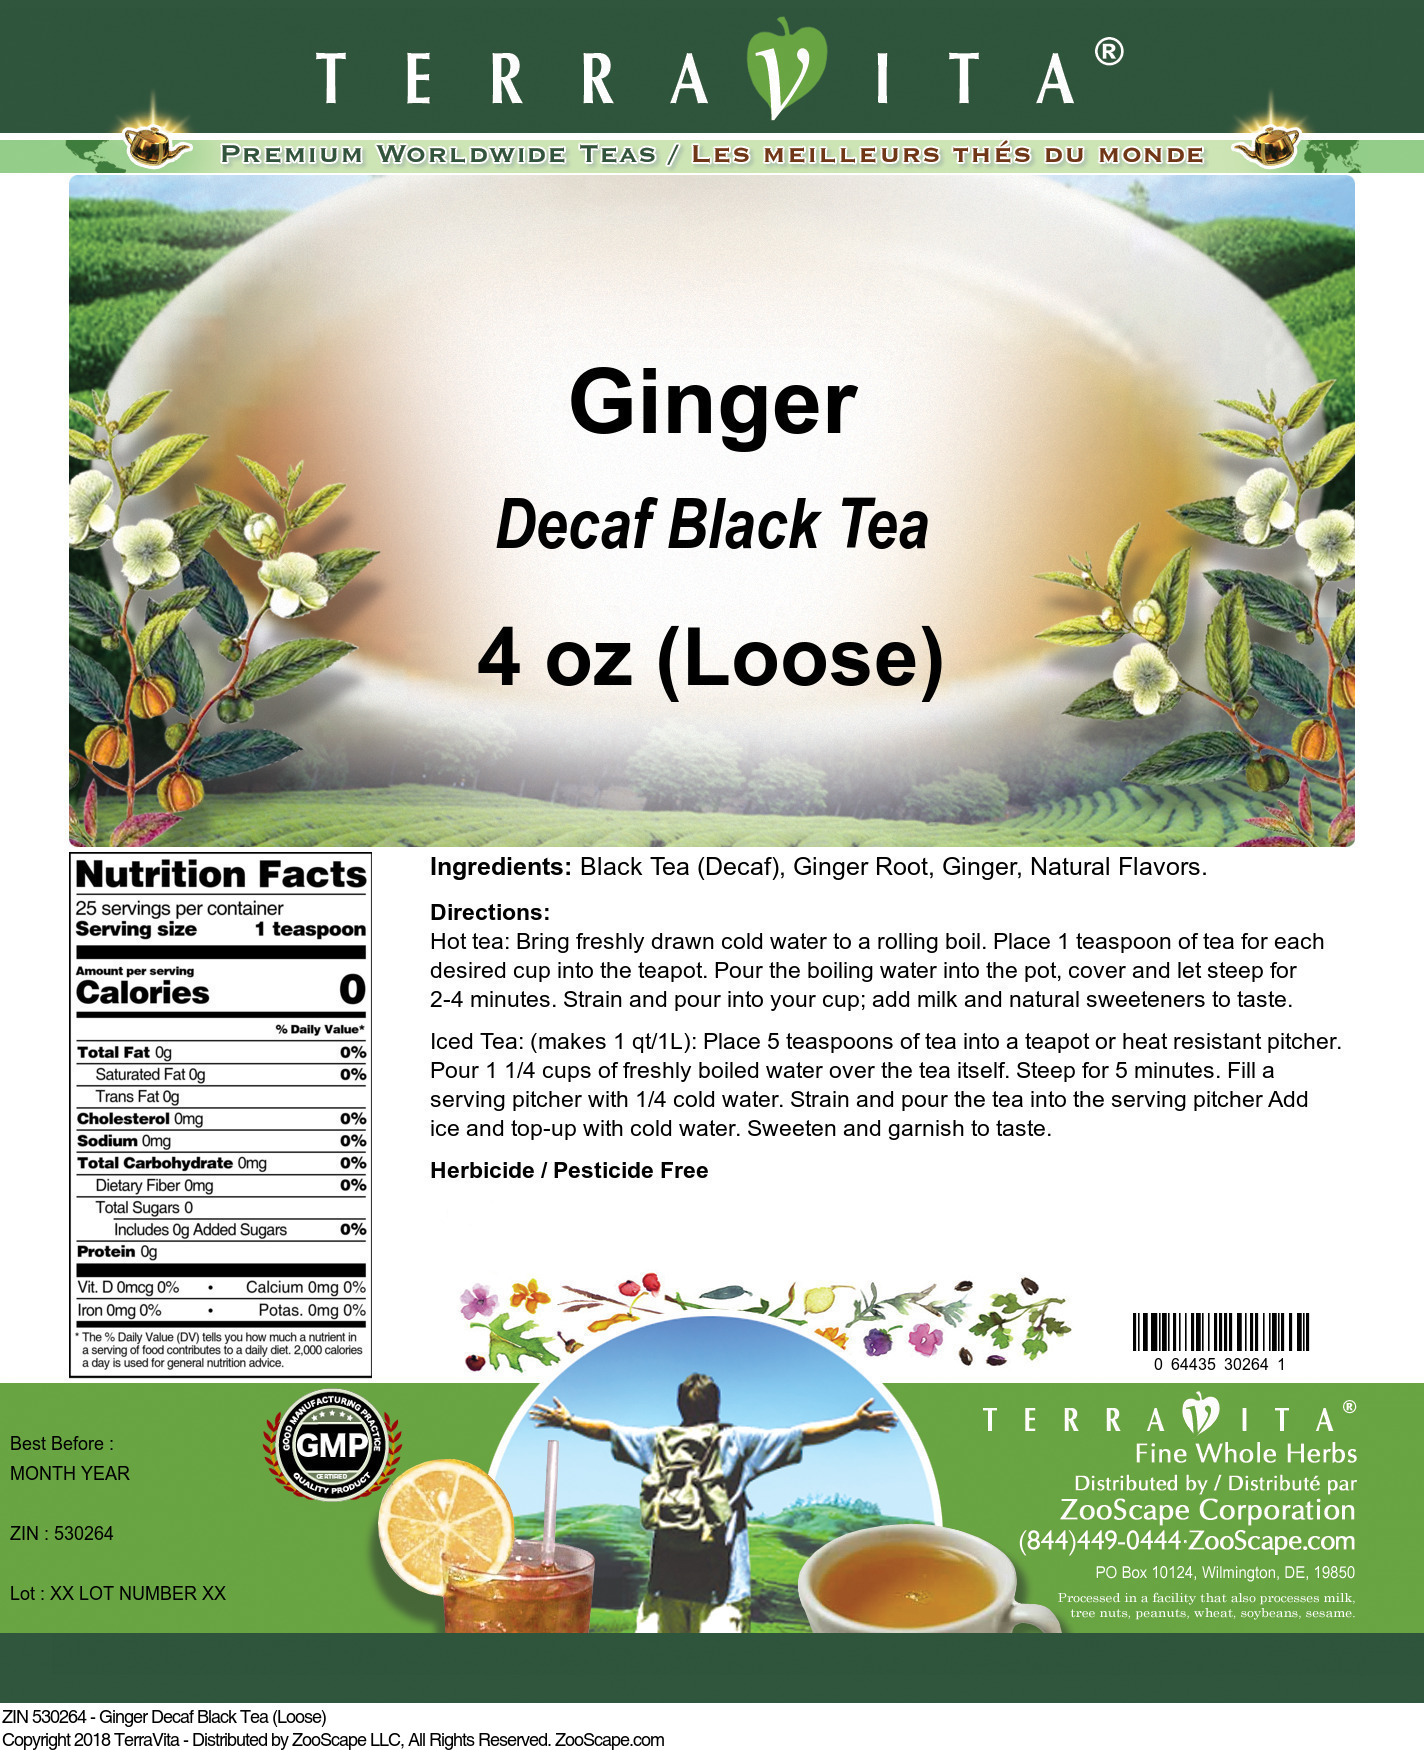 Ginger Decaf Black Tea (Loose) - Label